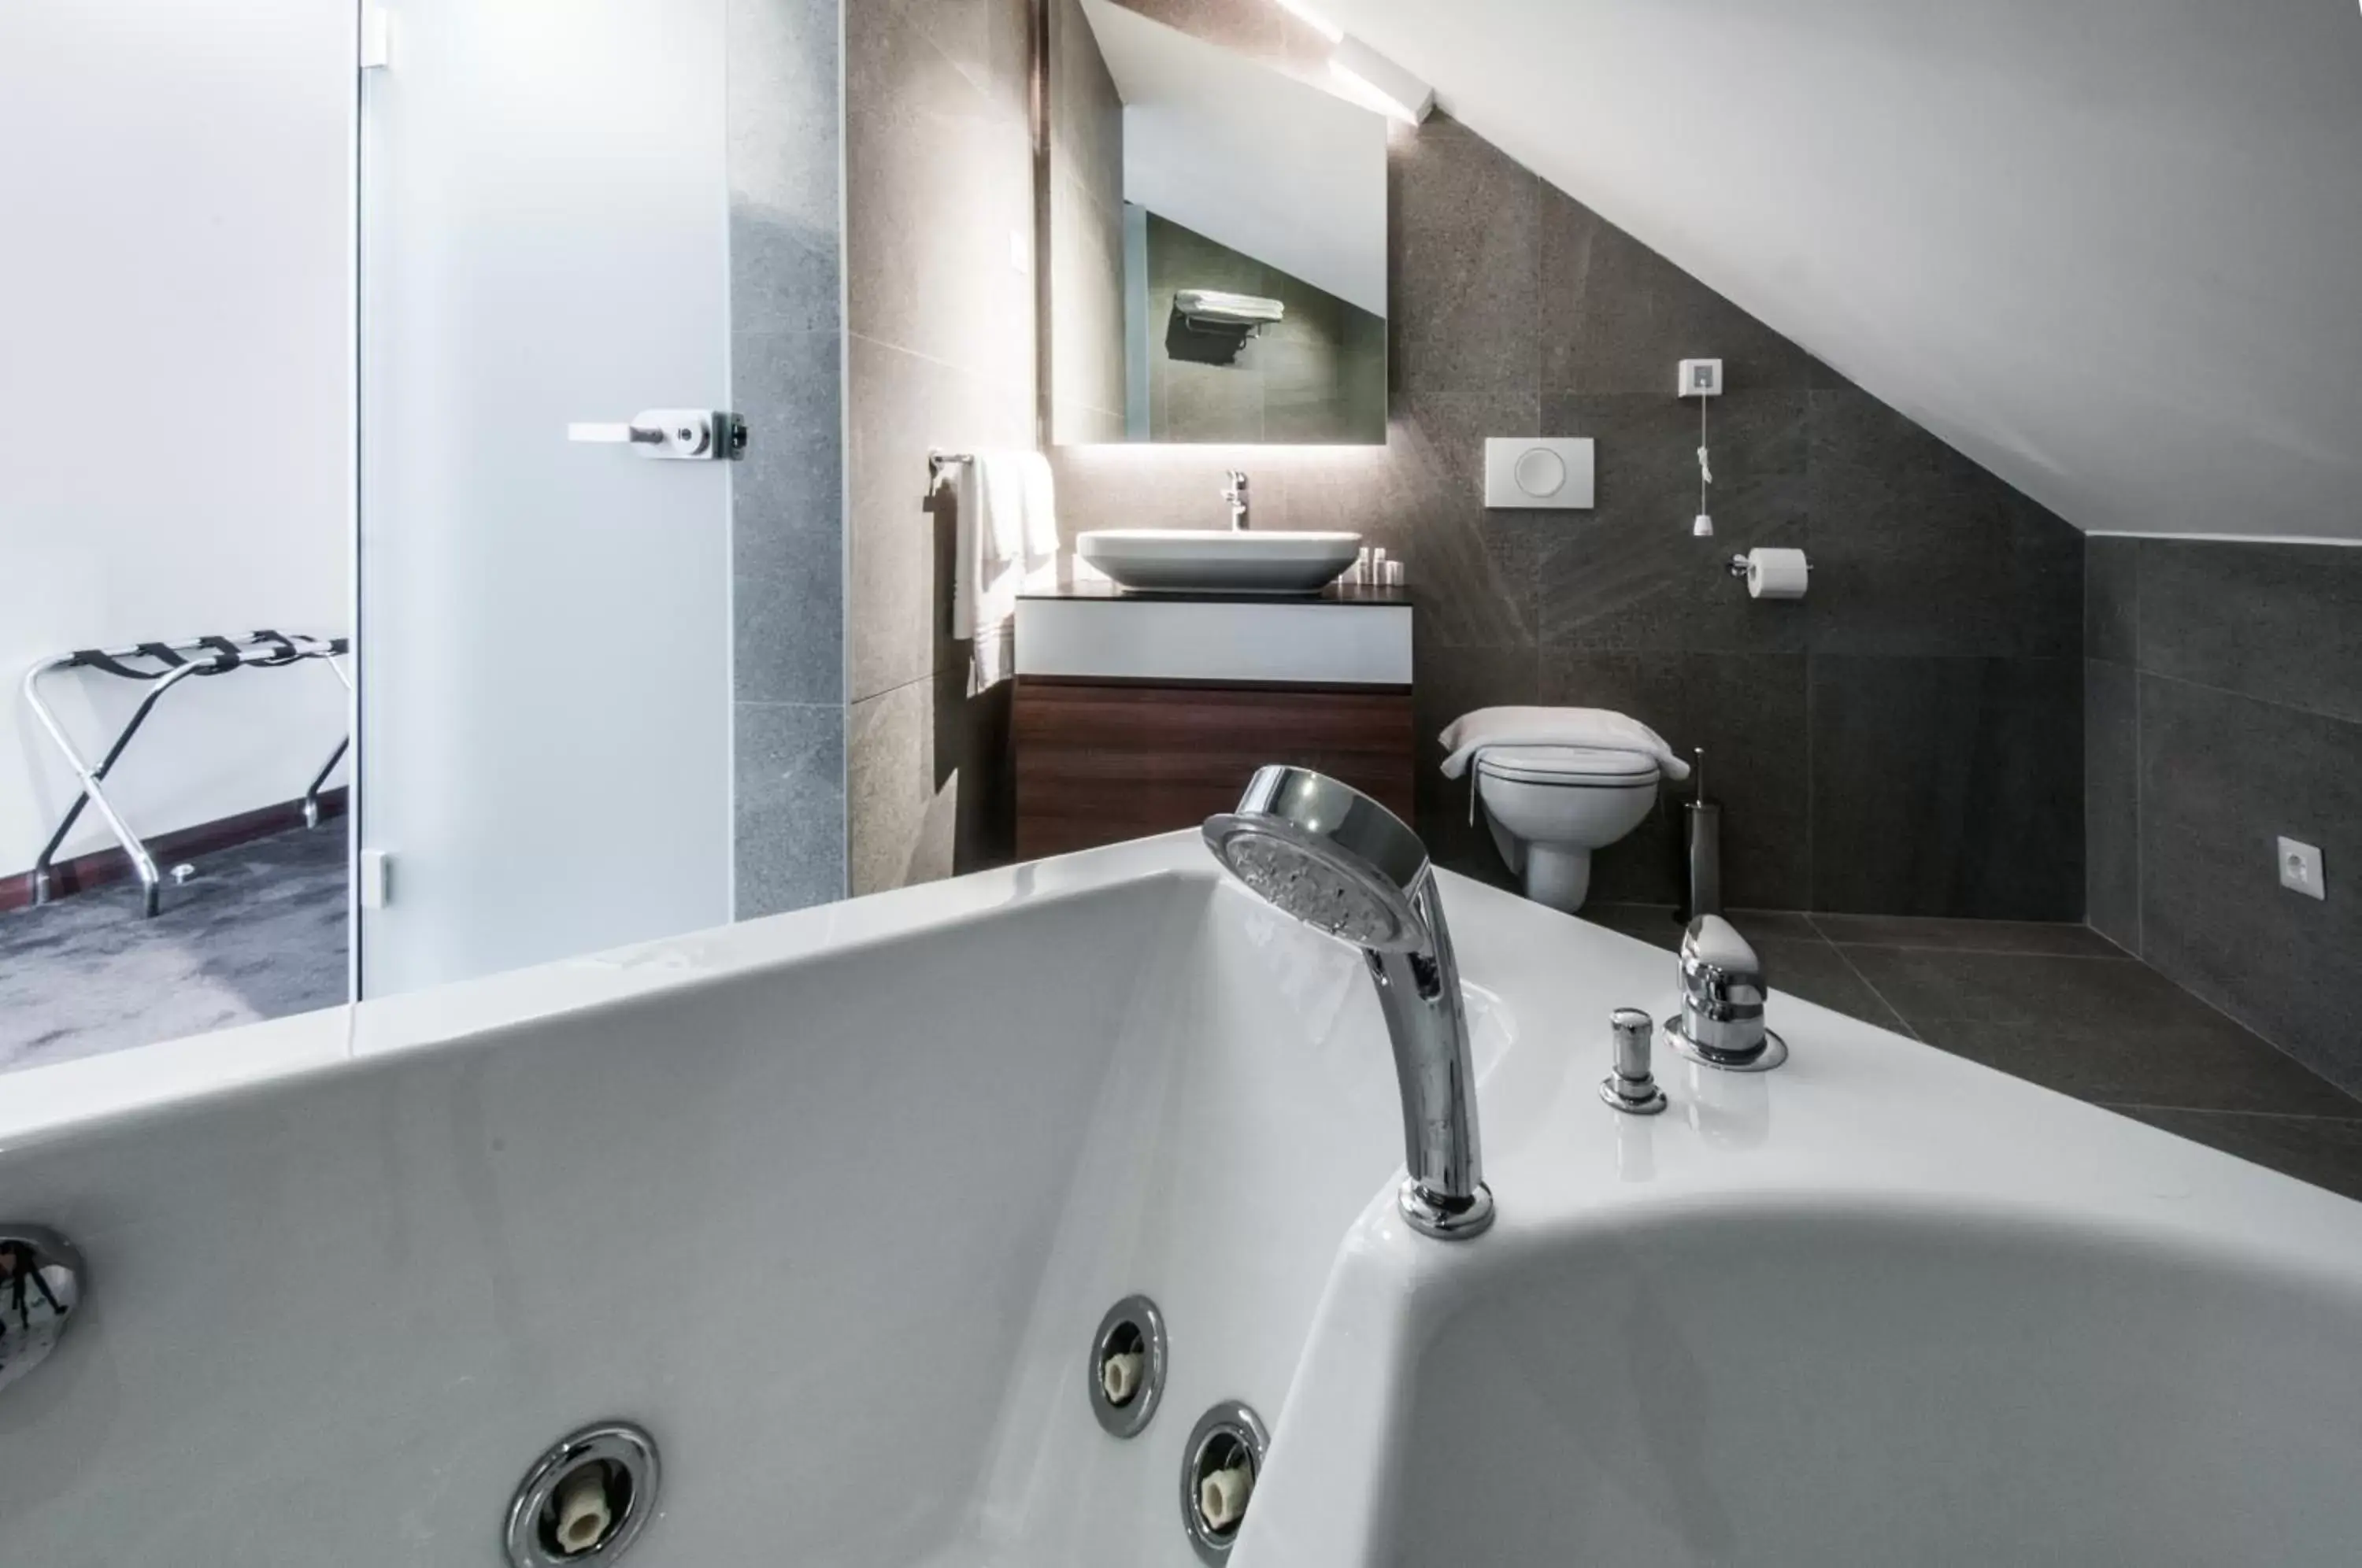 Hot Tub, Bathroom in Best Western Premier Natalija Residence